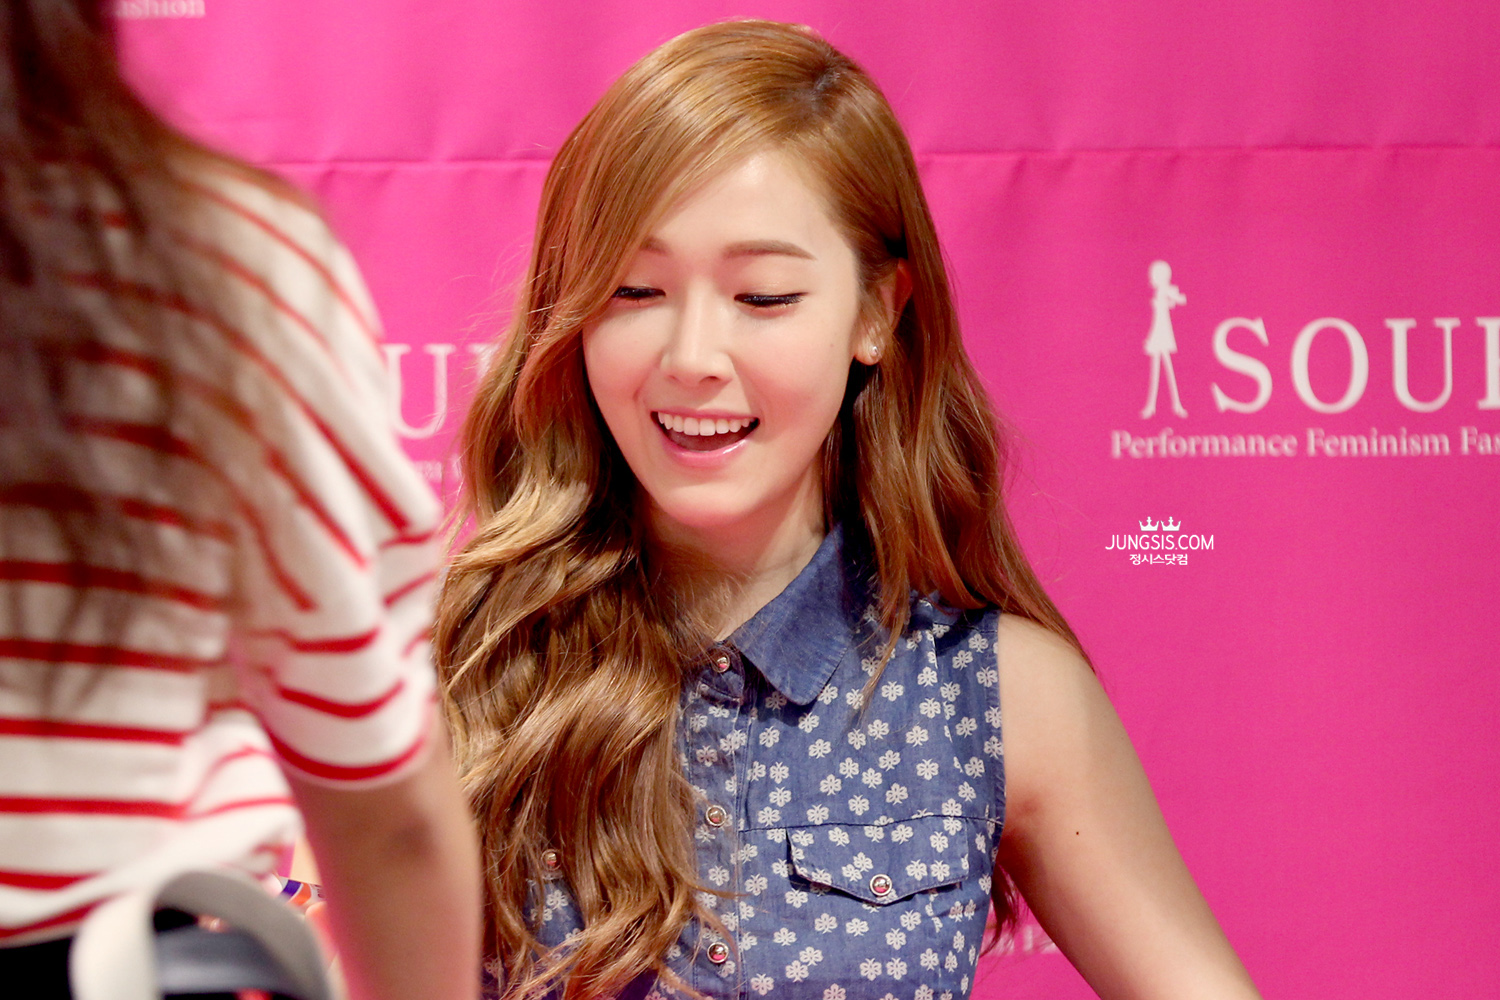 [PIC][04-04-2014]Jessica tham dự buổi fansign cho thương hiệu "SOUP" vào trưa nay - Page 3 2310CD4353A448710D87E9